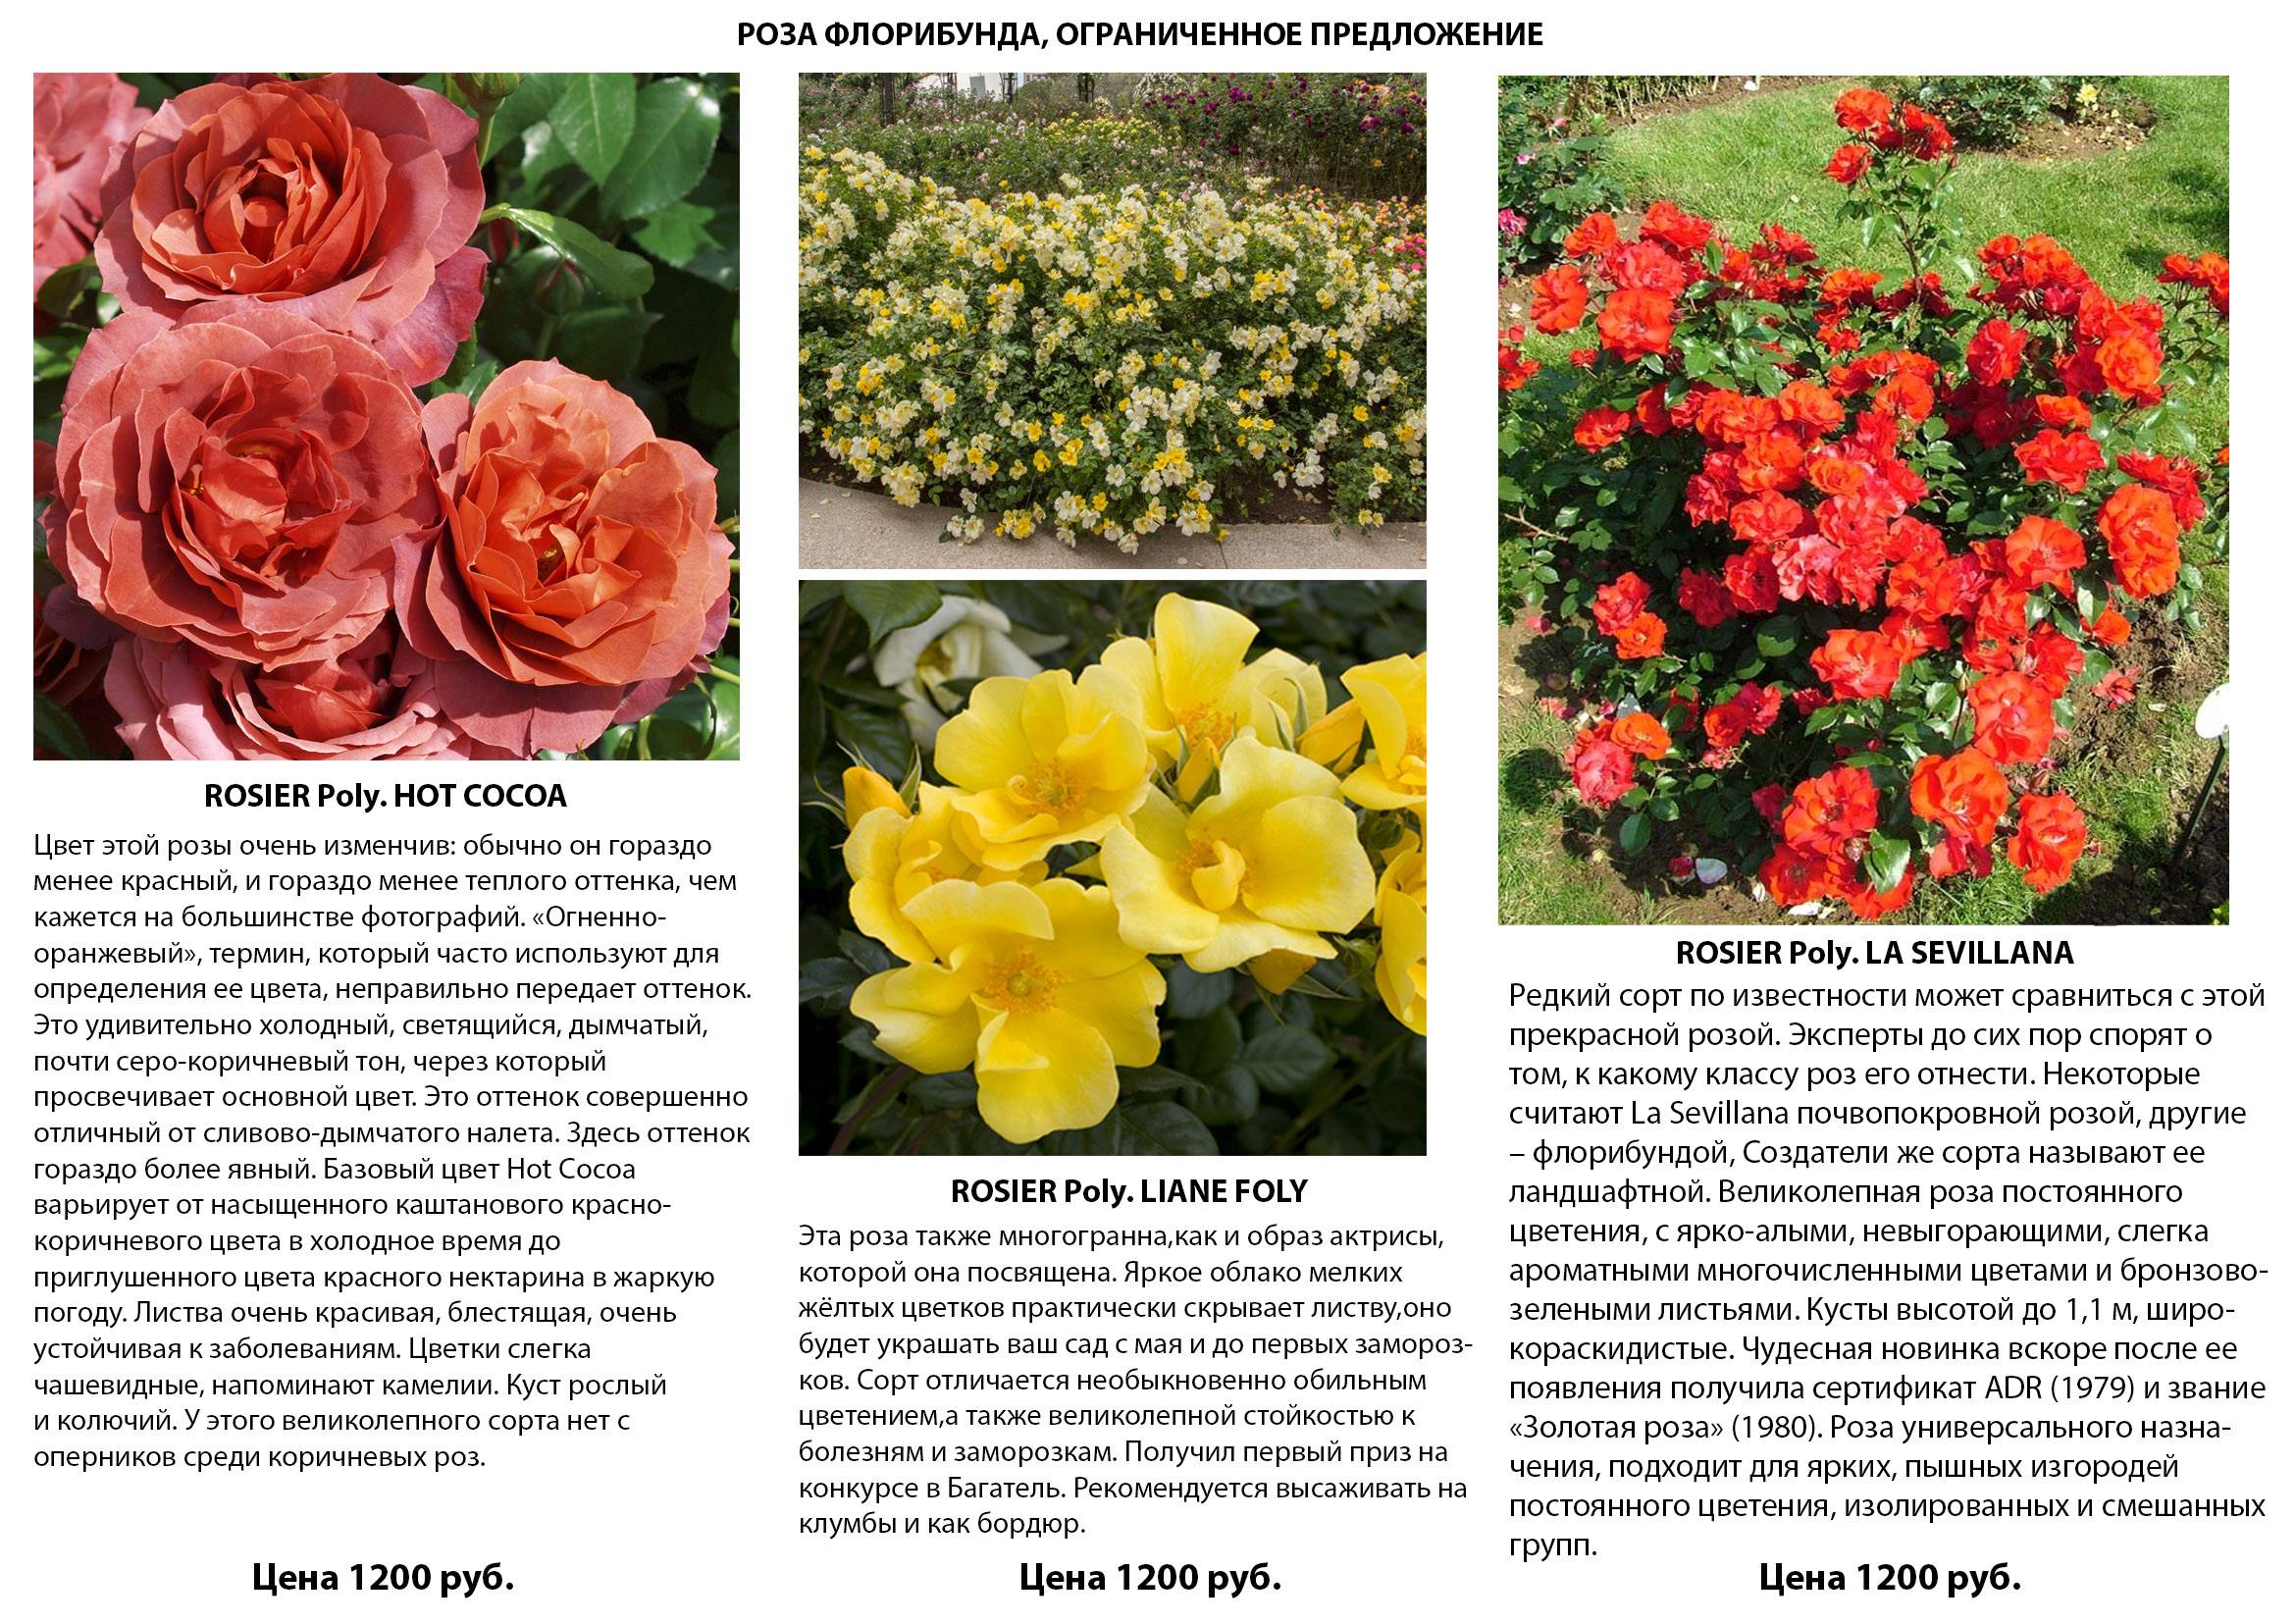 Роза лагуна: описание плетистого растения и особенности сорта, его фото, а также правила по уходу, способы размножения, болезни и вредителидача эксперт